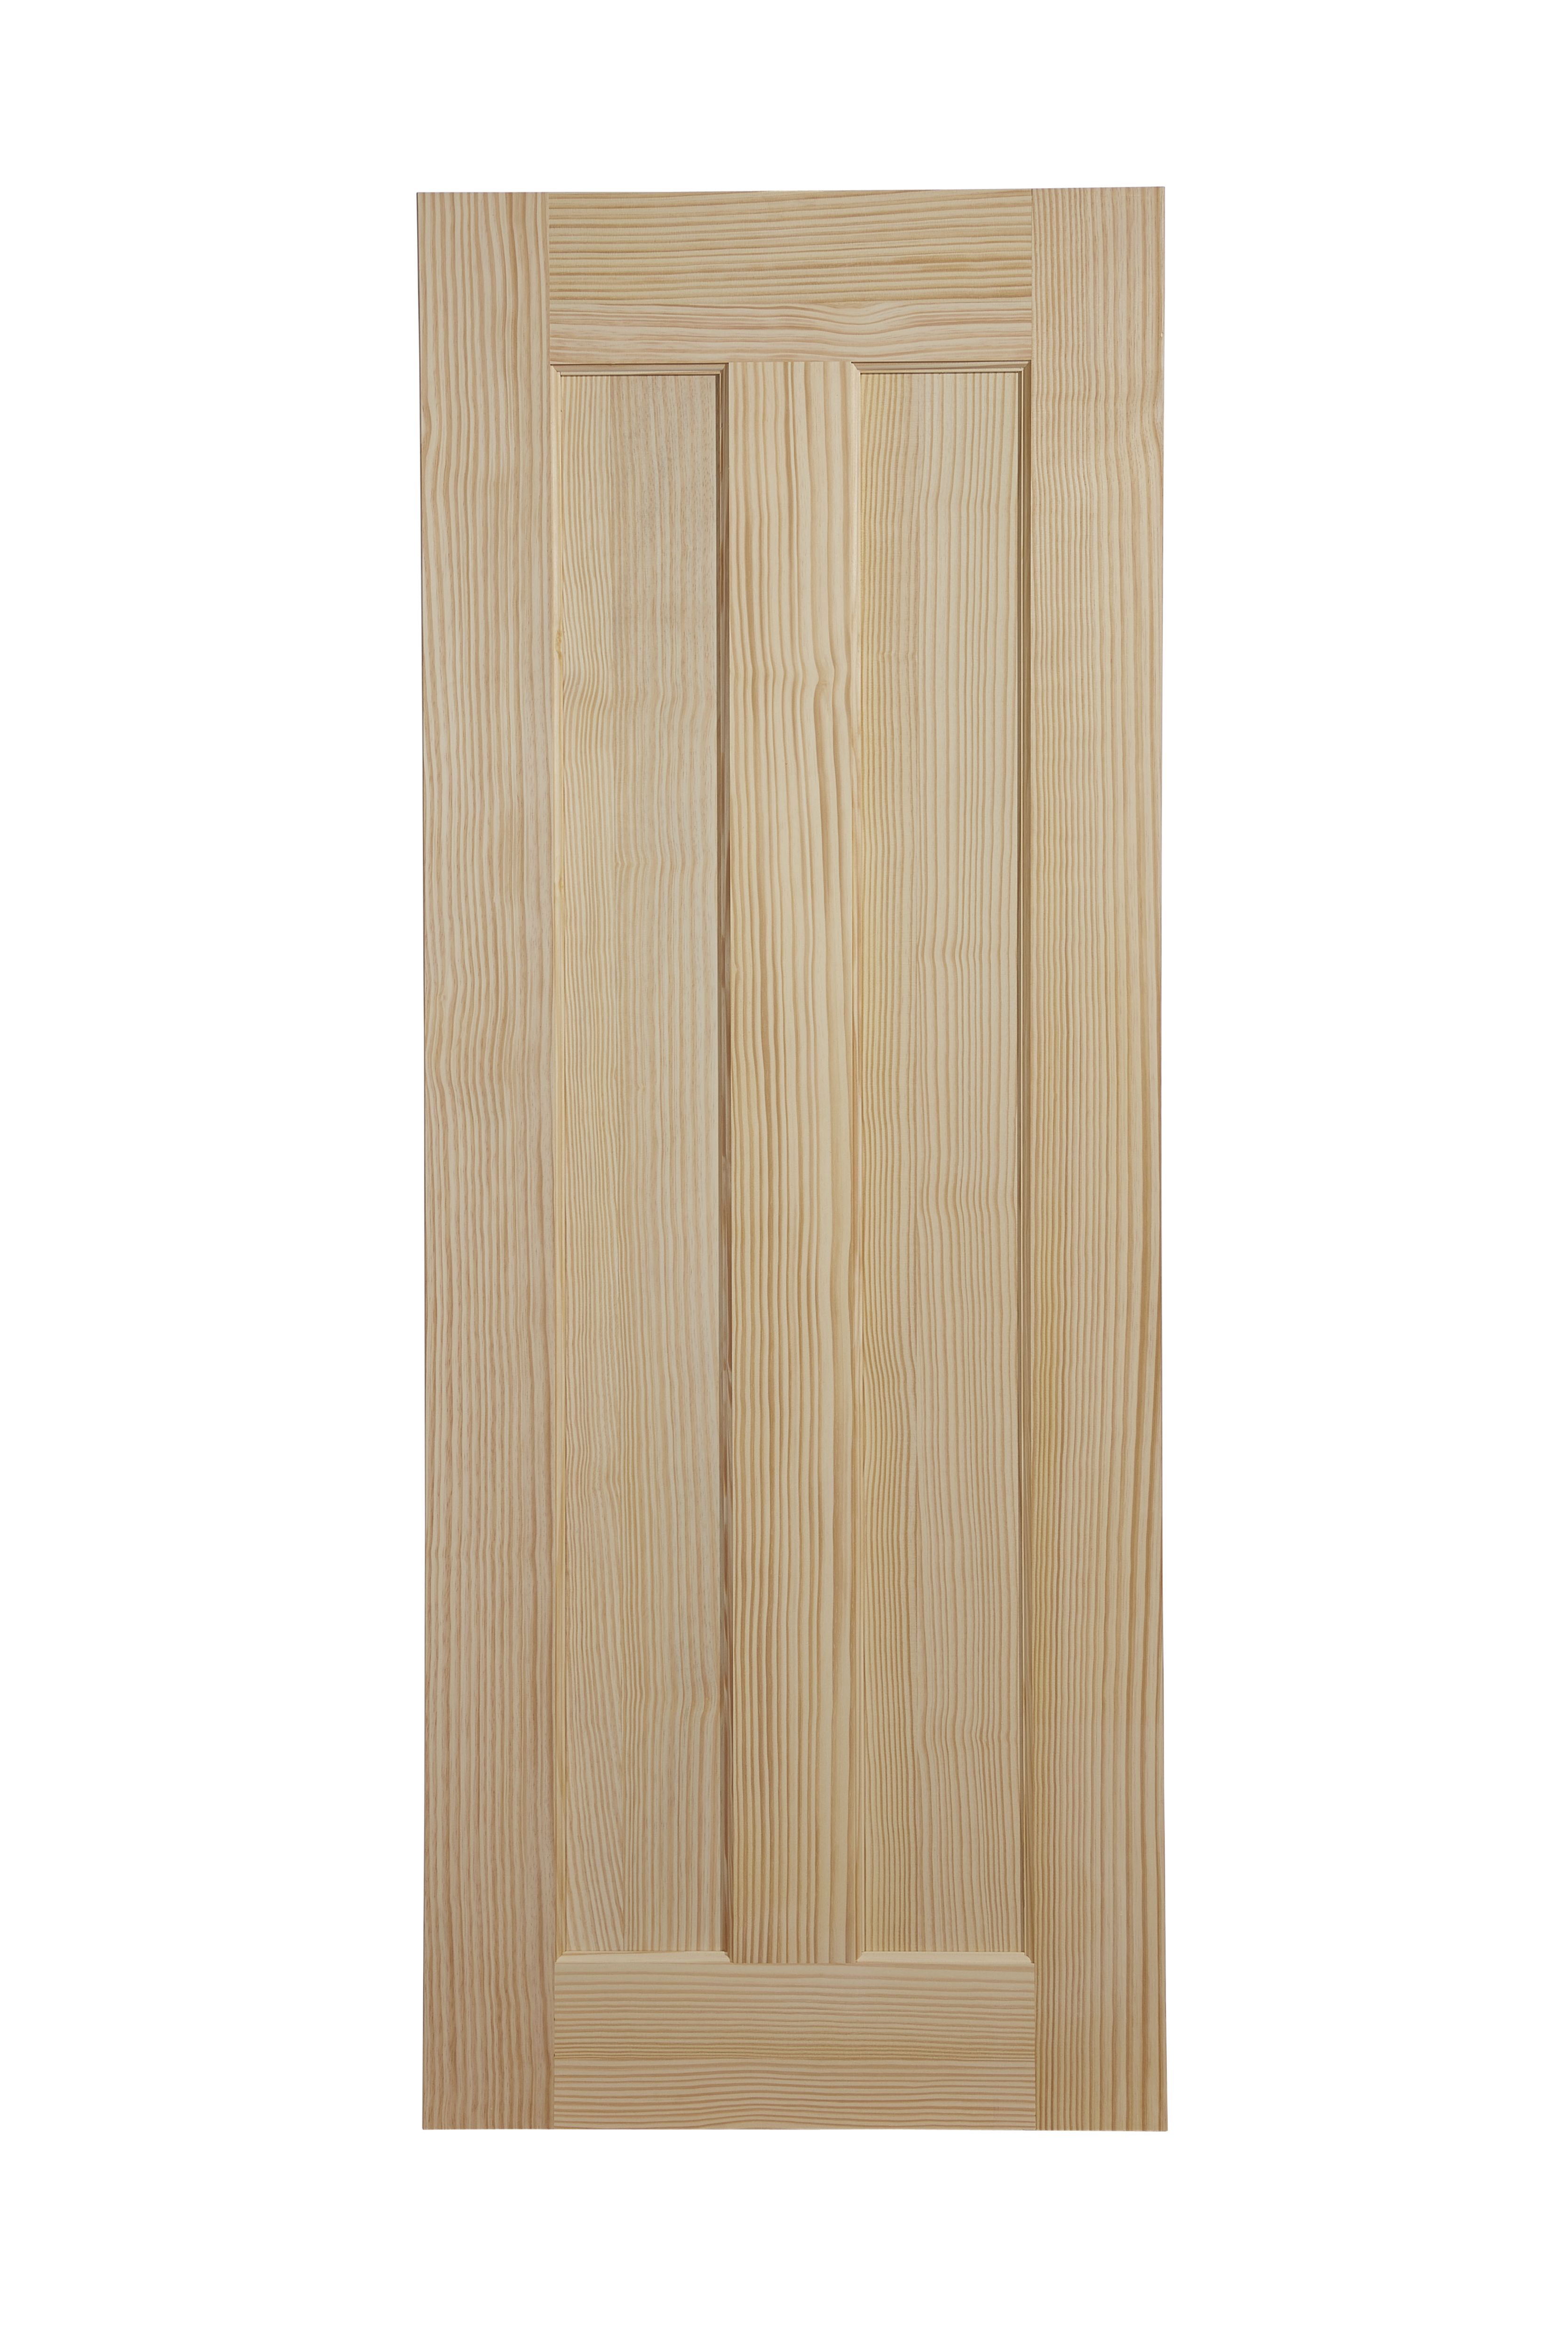 Vertical 2 panel Unglazed Contemporary Pine veneer Internal Clear pine Door, (H)1981mm (W)686mm (T)35mm